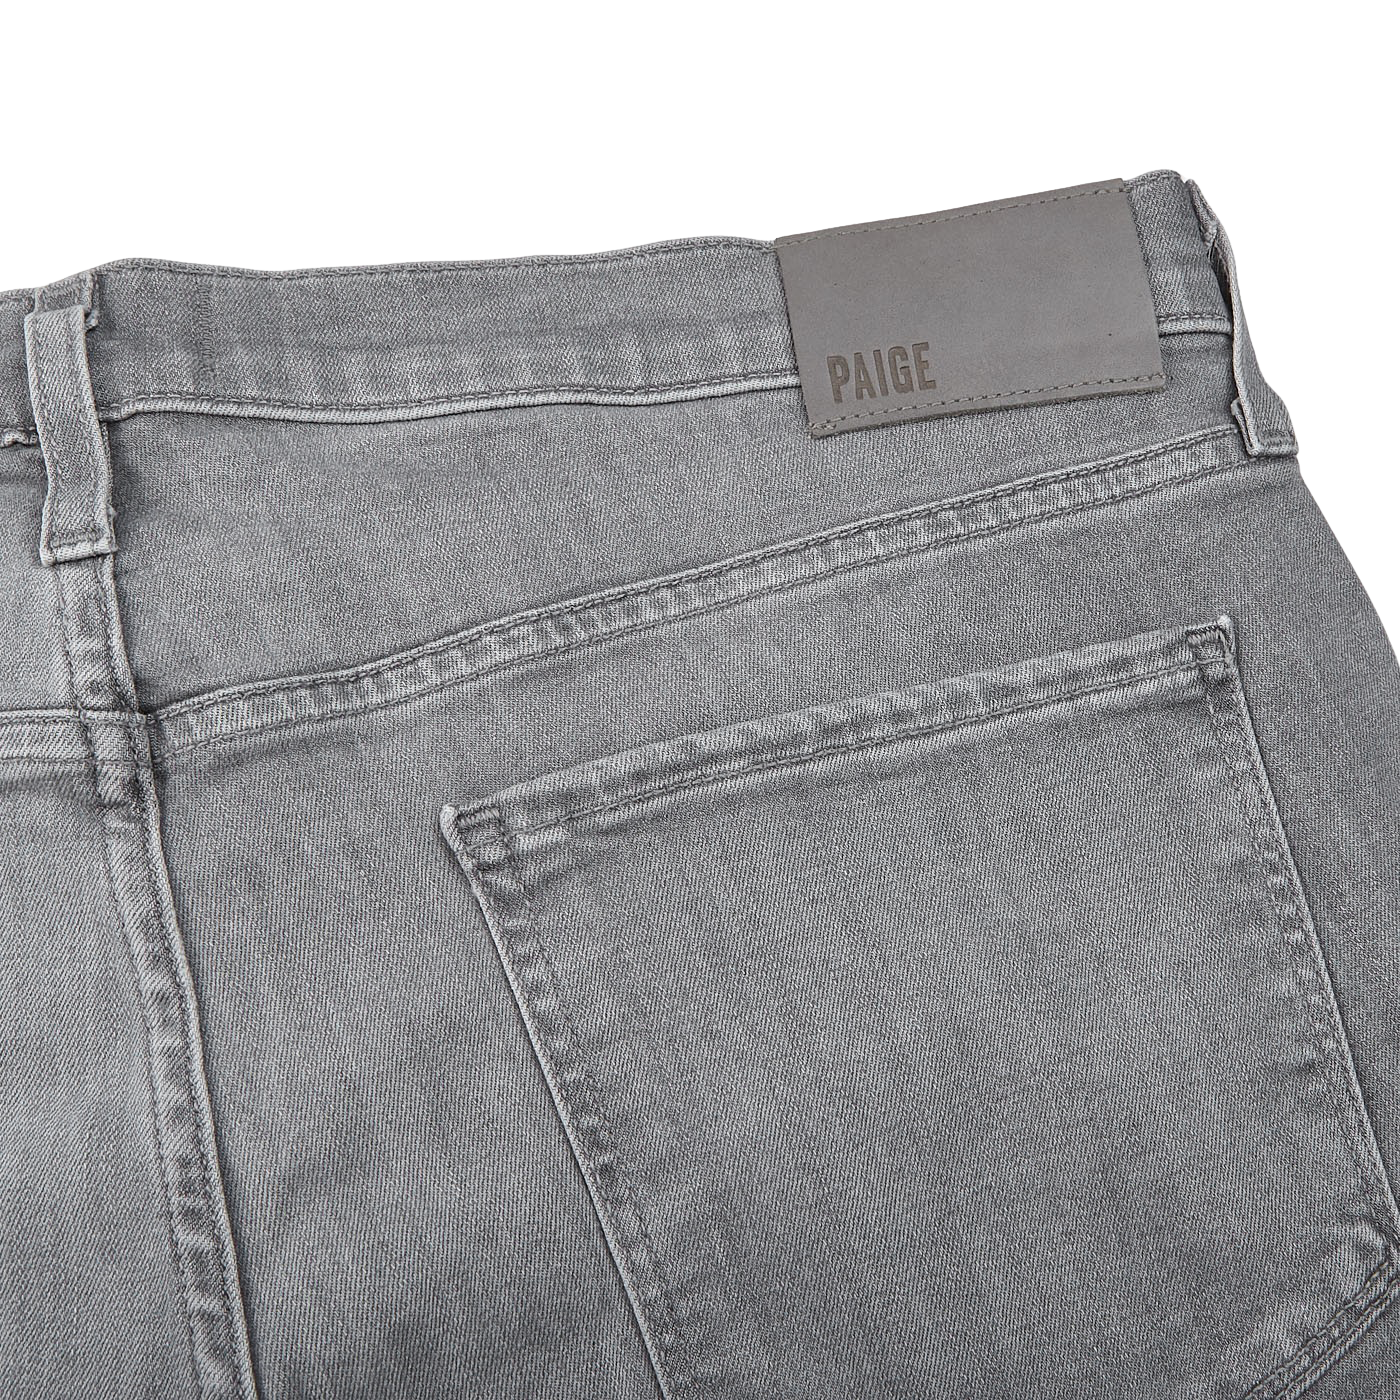 Paige Light Grey Cotton Stretch Lennox Jeans Pocket